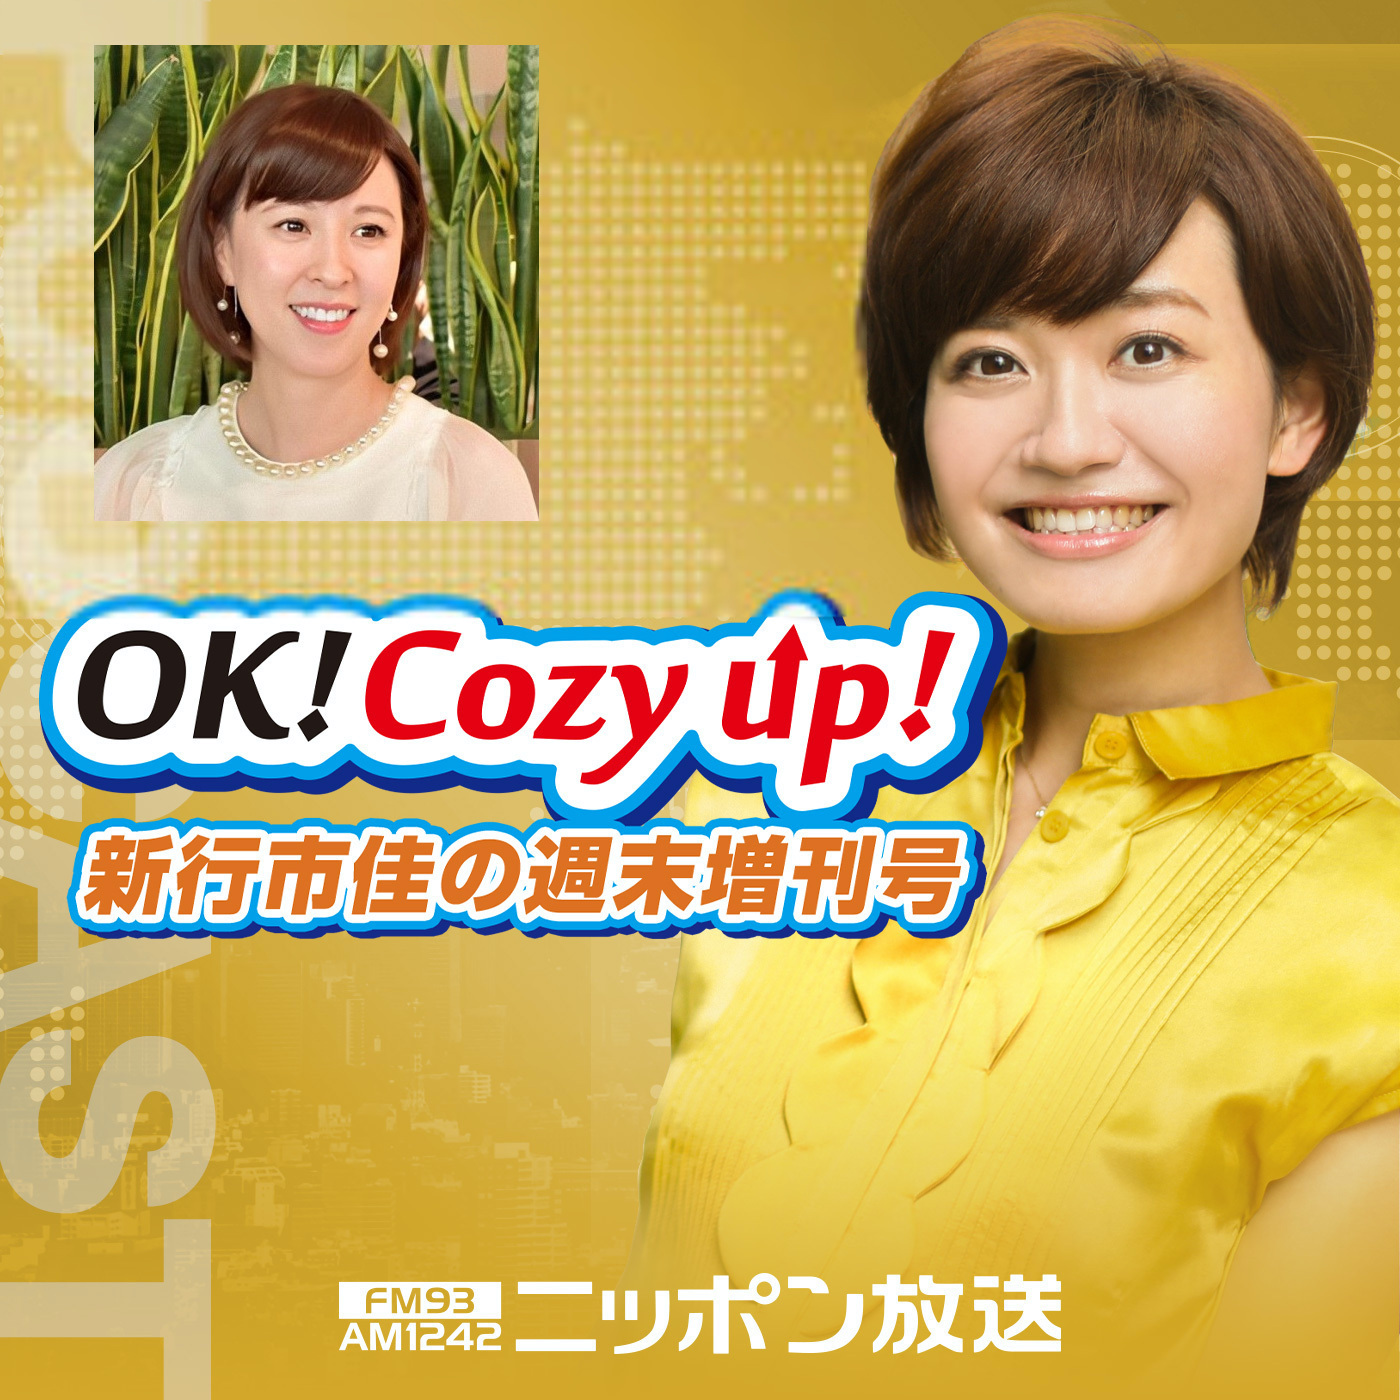 2021年7月31日（土）「OK! Cozy up!週末増刊号」